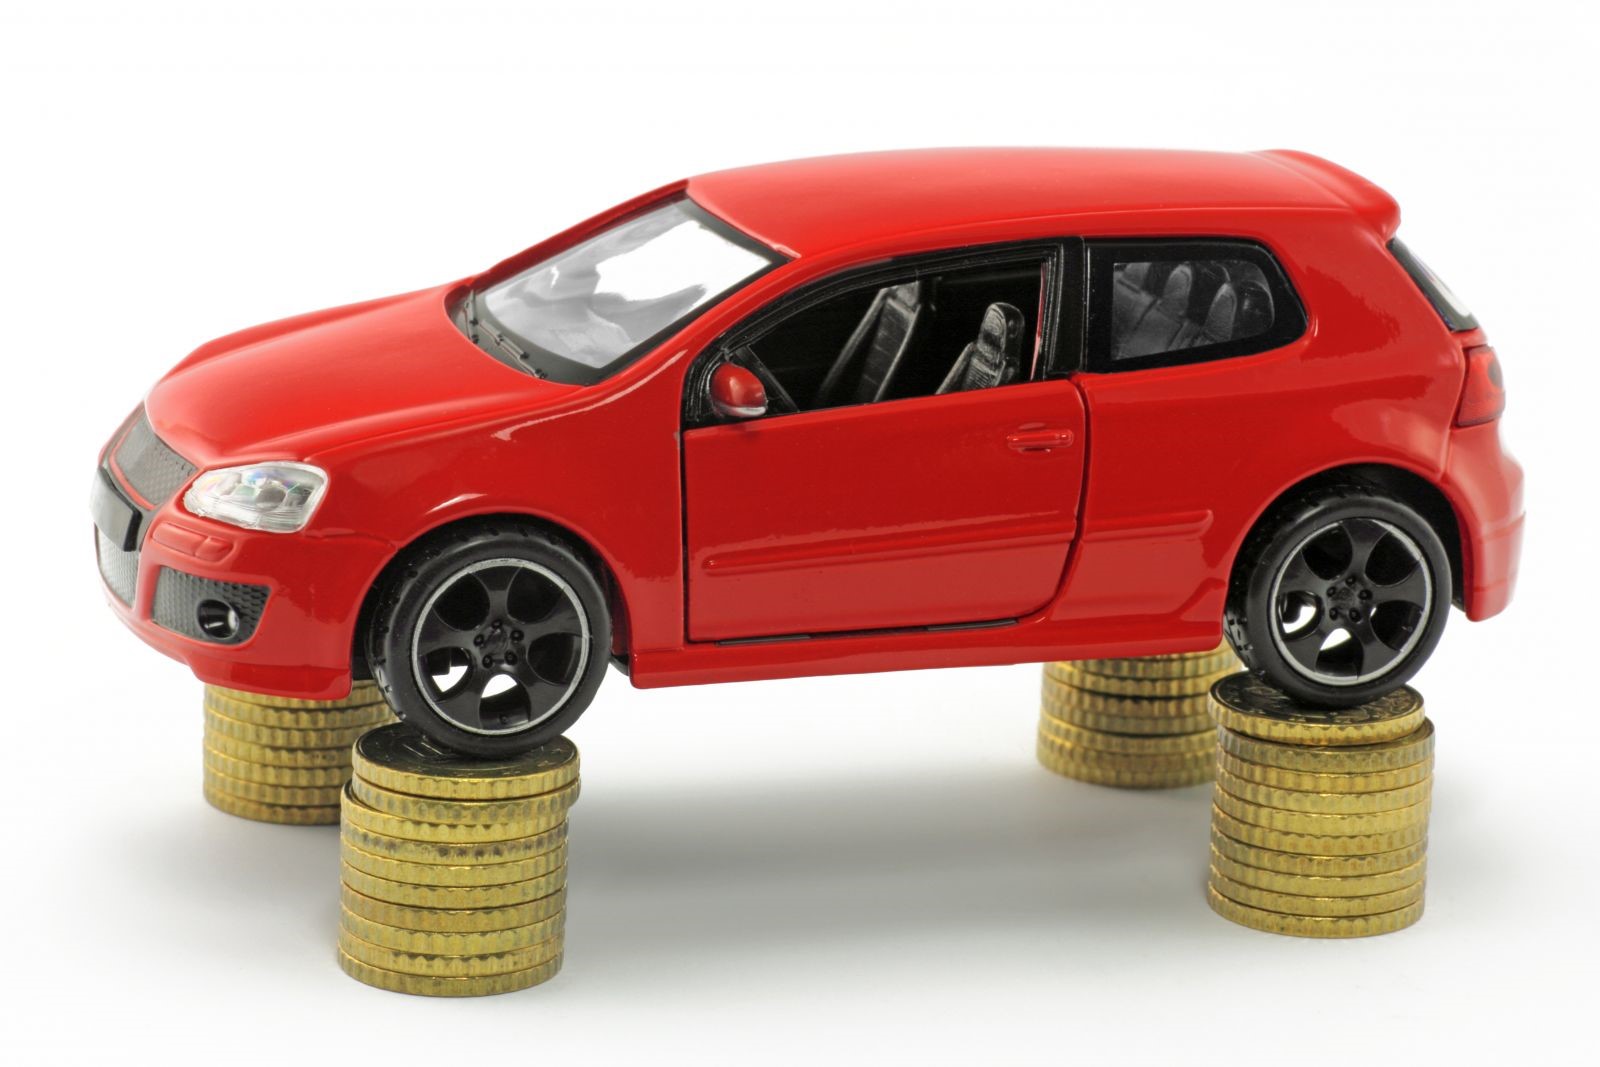 Factors That Affect Your Car Insurance Rates